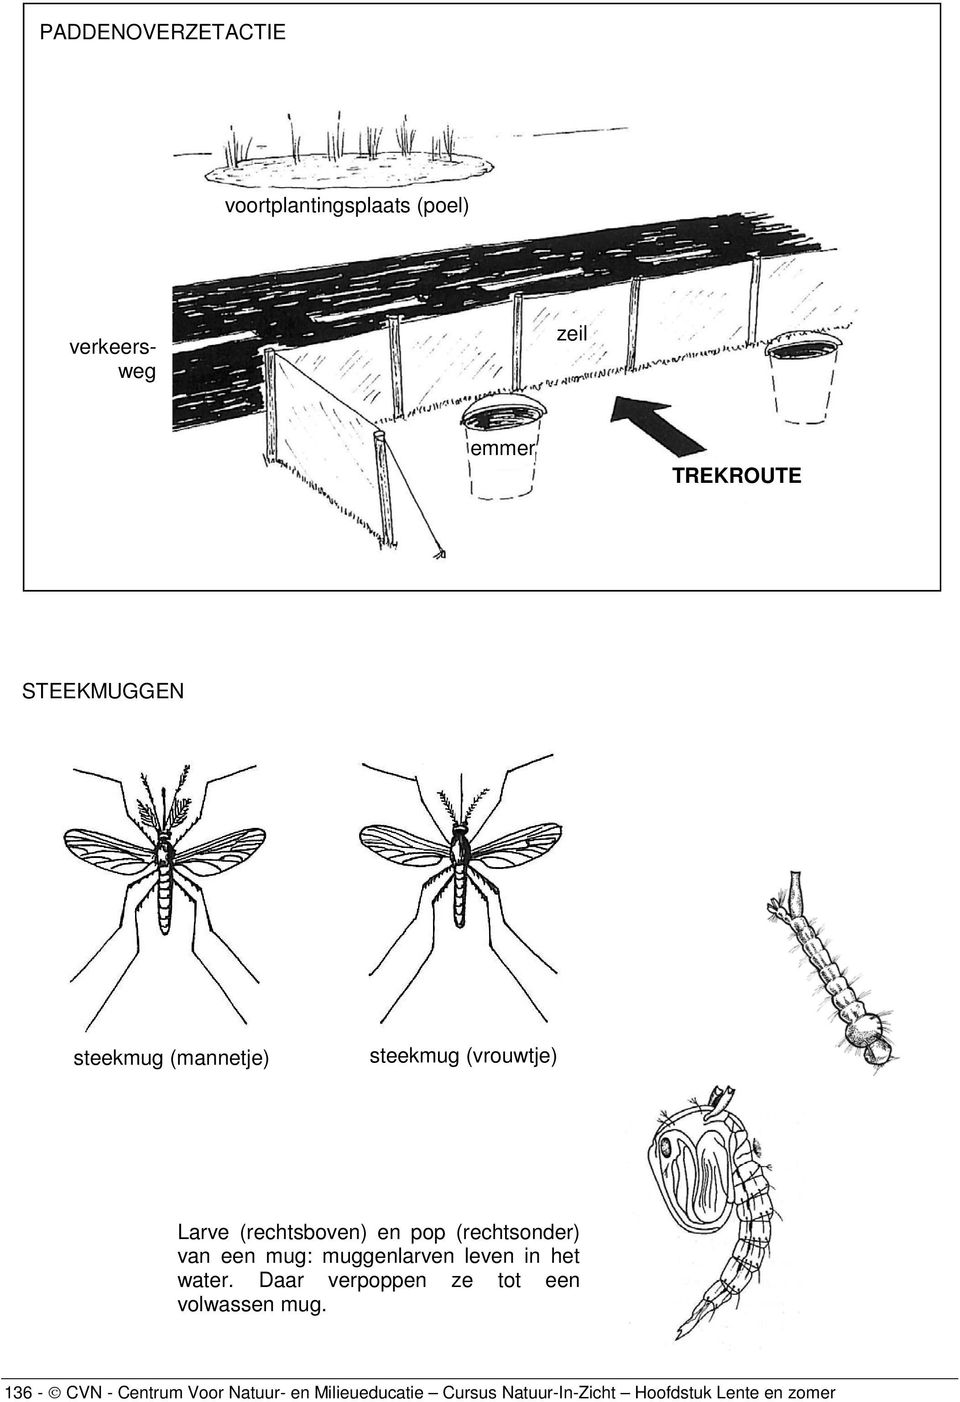 (rechtsonder) van een mug: muggenlarven leven in het water.